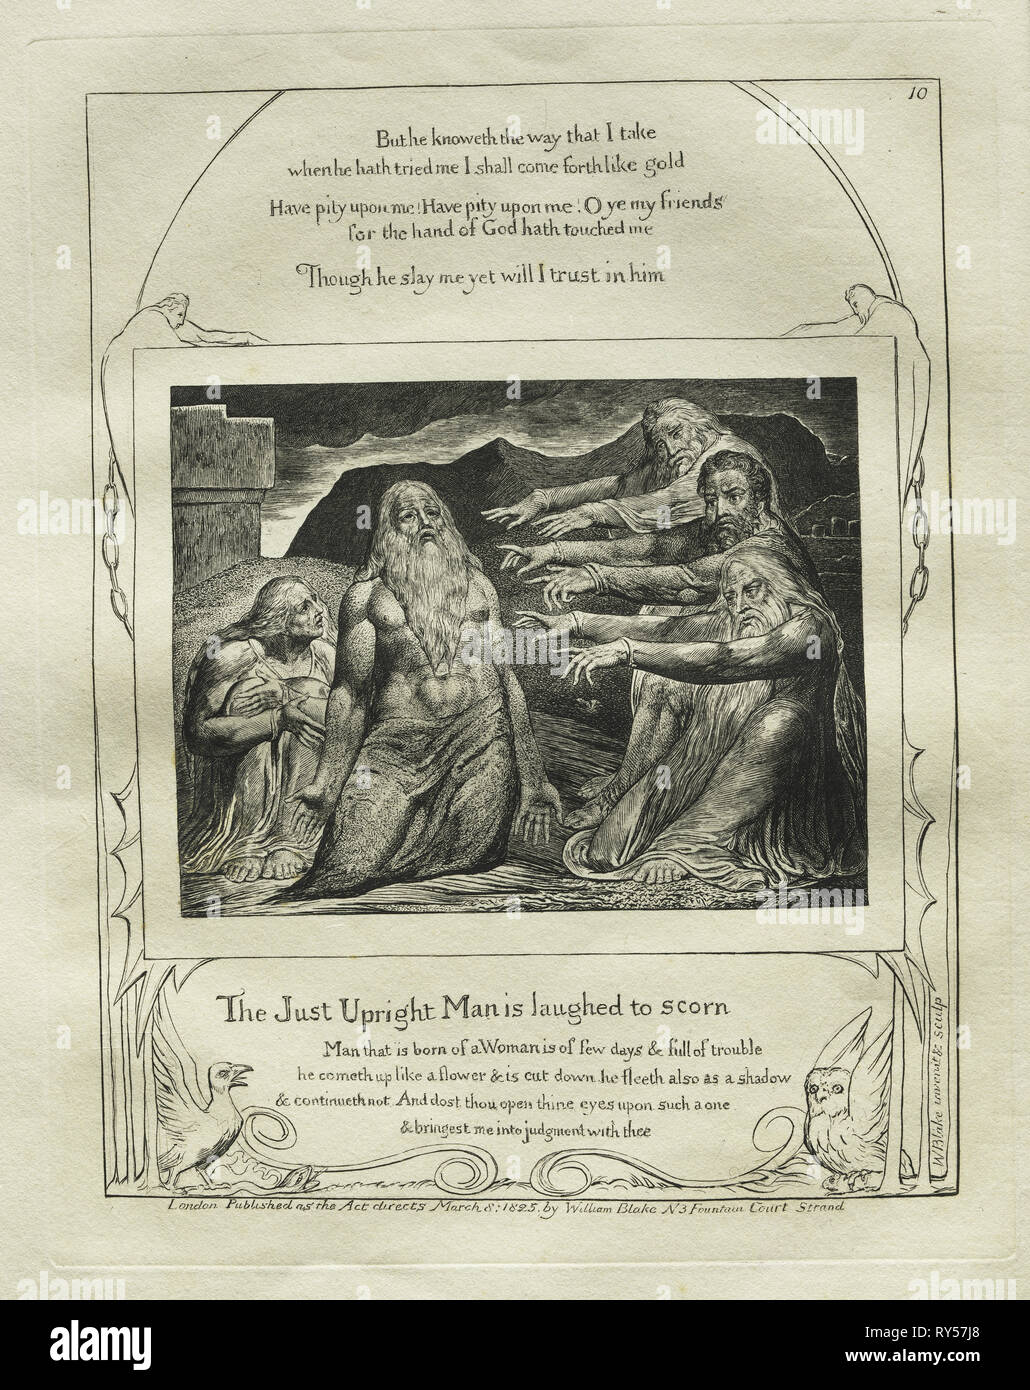 Das Buch Hiob: Pl. 10, die nur aufrechte Mensch ist zu verachten, 1825 lachte. William Blake (British, 1757-1827). Gravur Stockfoto